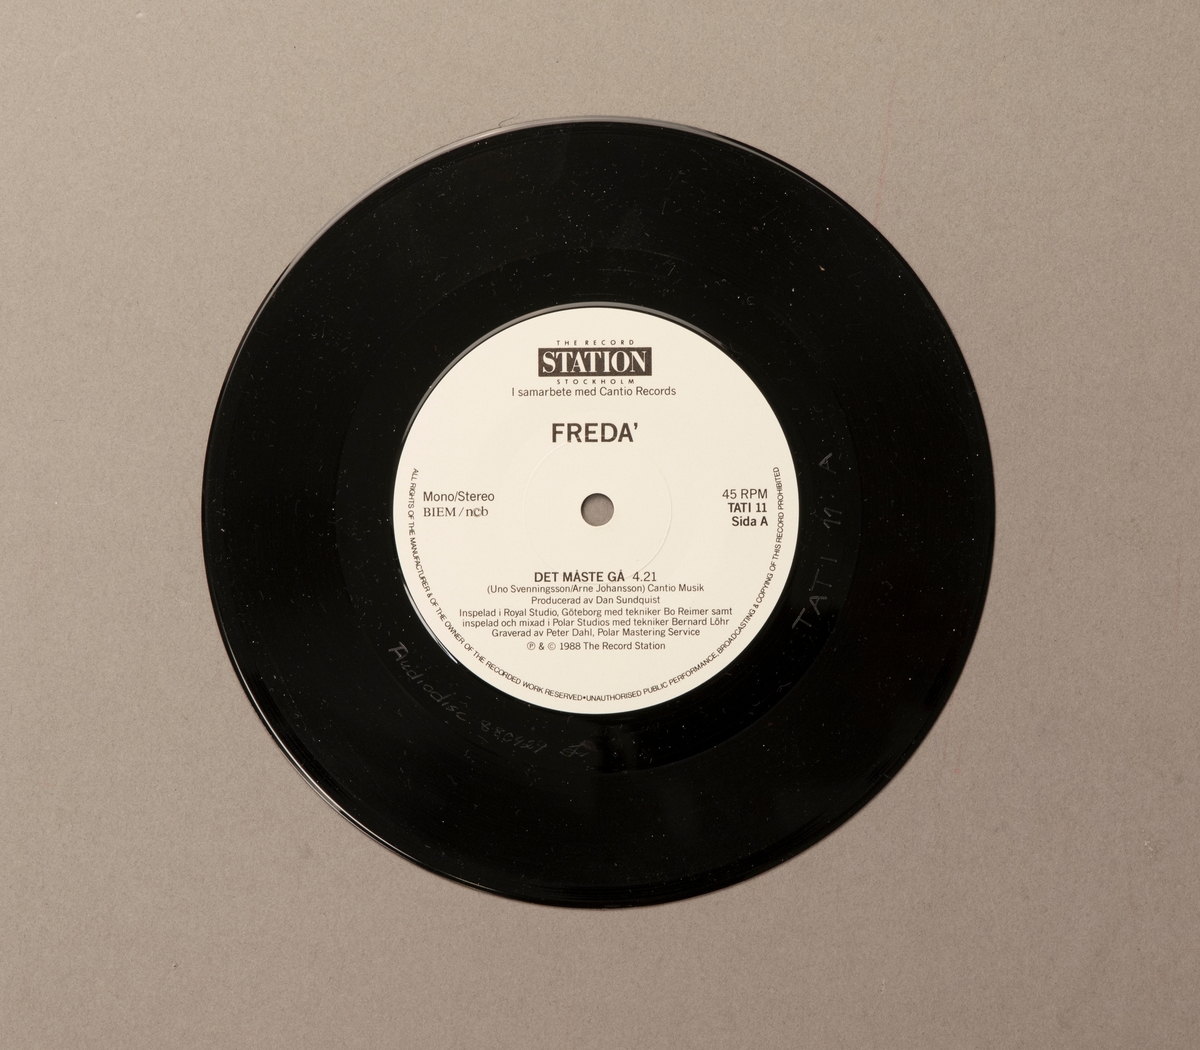 Singel-skiva av svart vinyl med vit pappersetikett, i omslag av papper. Framsidan av omslaget har ett färgfotografi av gruppen.

Innehåll
Sida A: Det måste gå
Sida B: Skrattet mitt i gråten

JM 55207:1, Skiva
JM 55207:2, Omslag